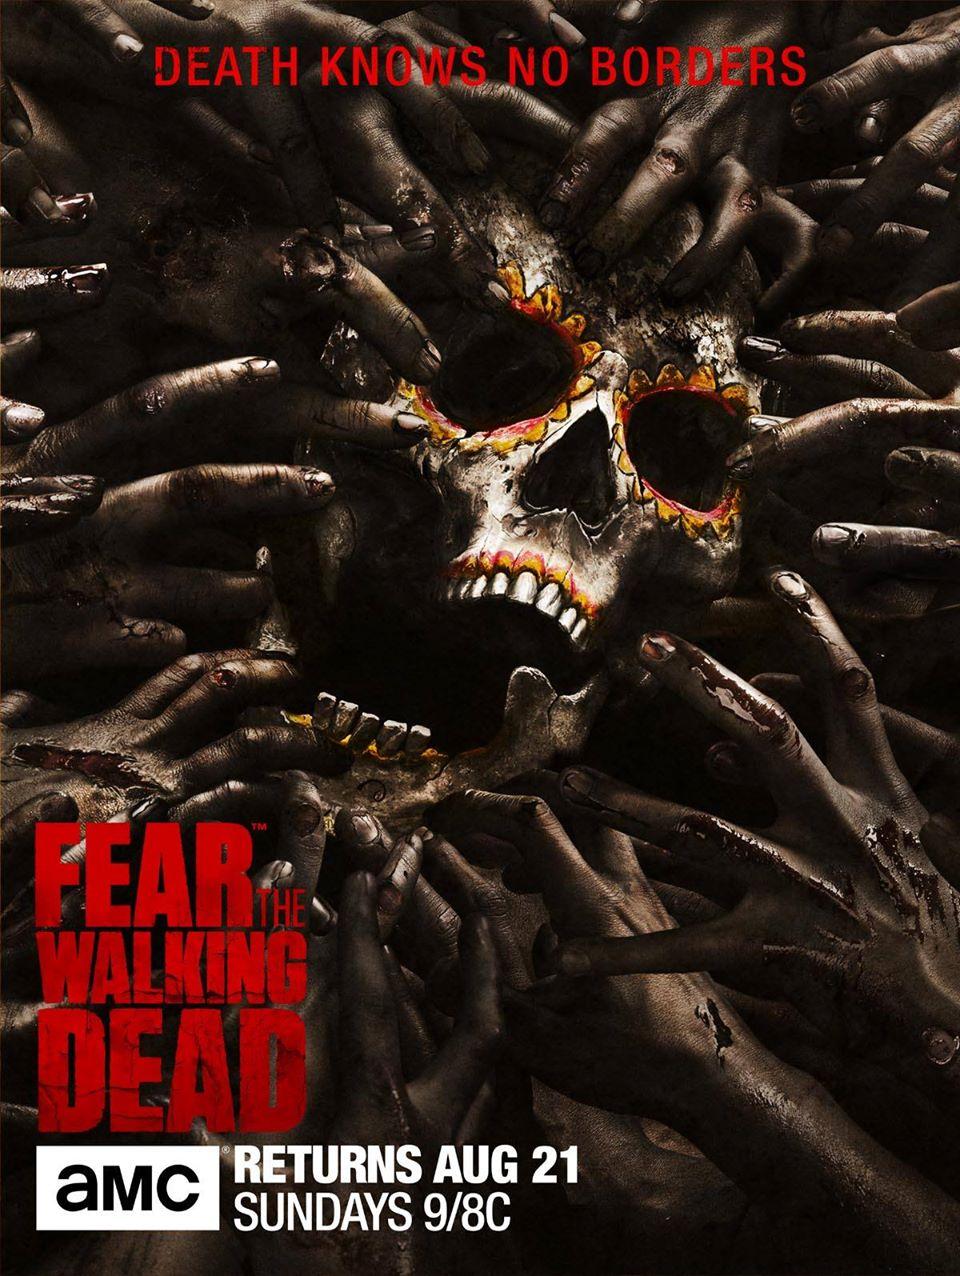 New Fear The Walking Dead Image Revealed Walking Dead